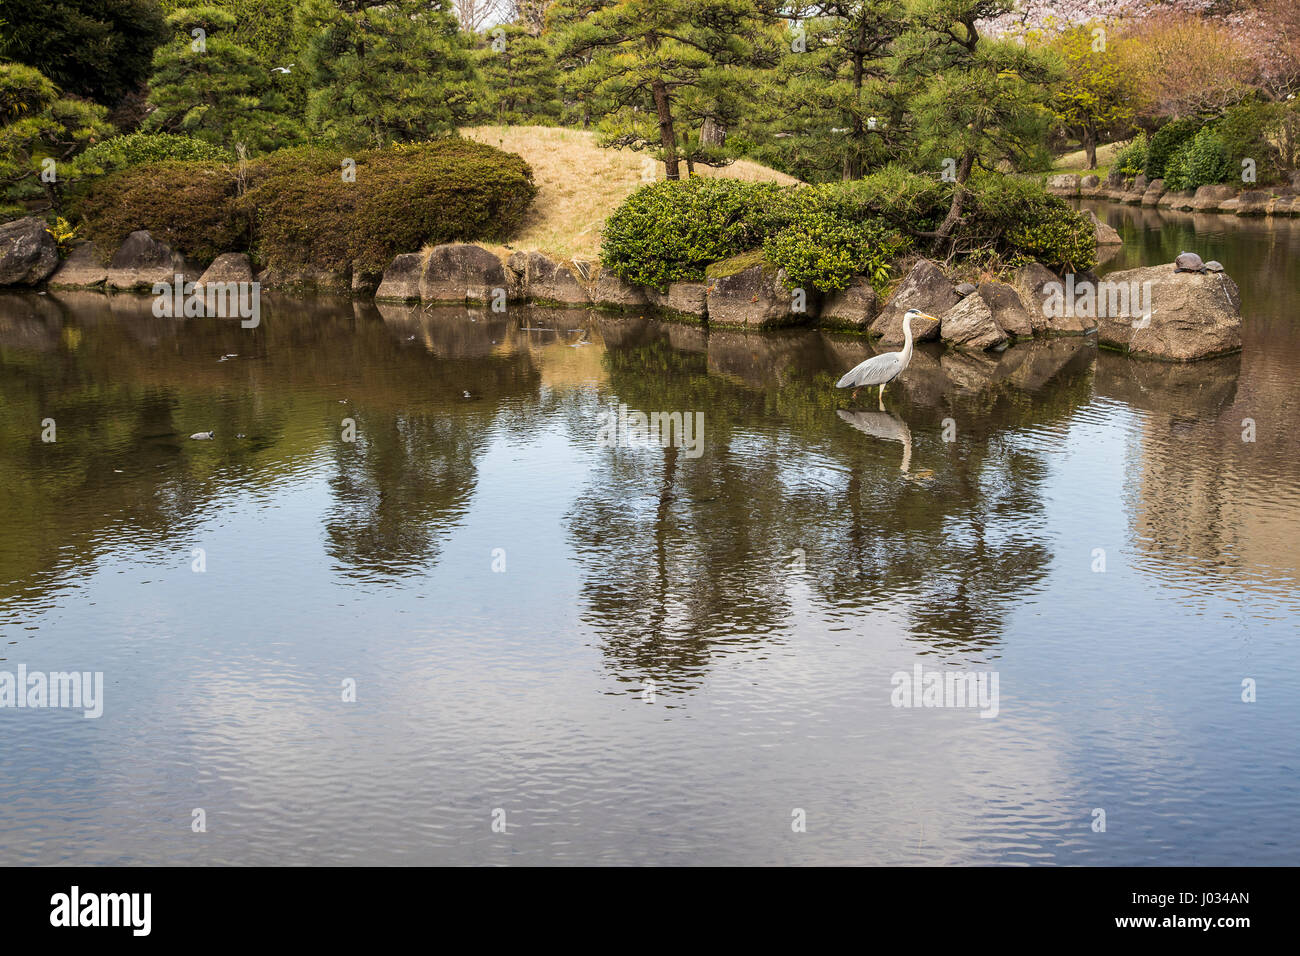 Sumida Park japanischen Teich Garten - Sumida Park gehört zu den besten 100 Sakura-Spots in Japan mit mehr als eintausend 1000 Kirschbäume auf Bot gepflanzt Stockfoto